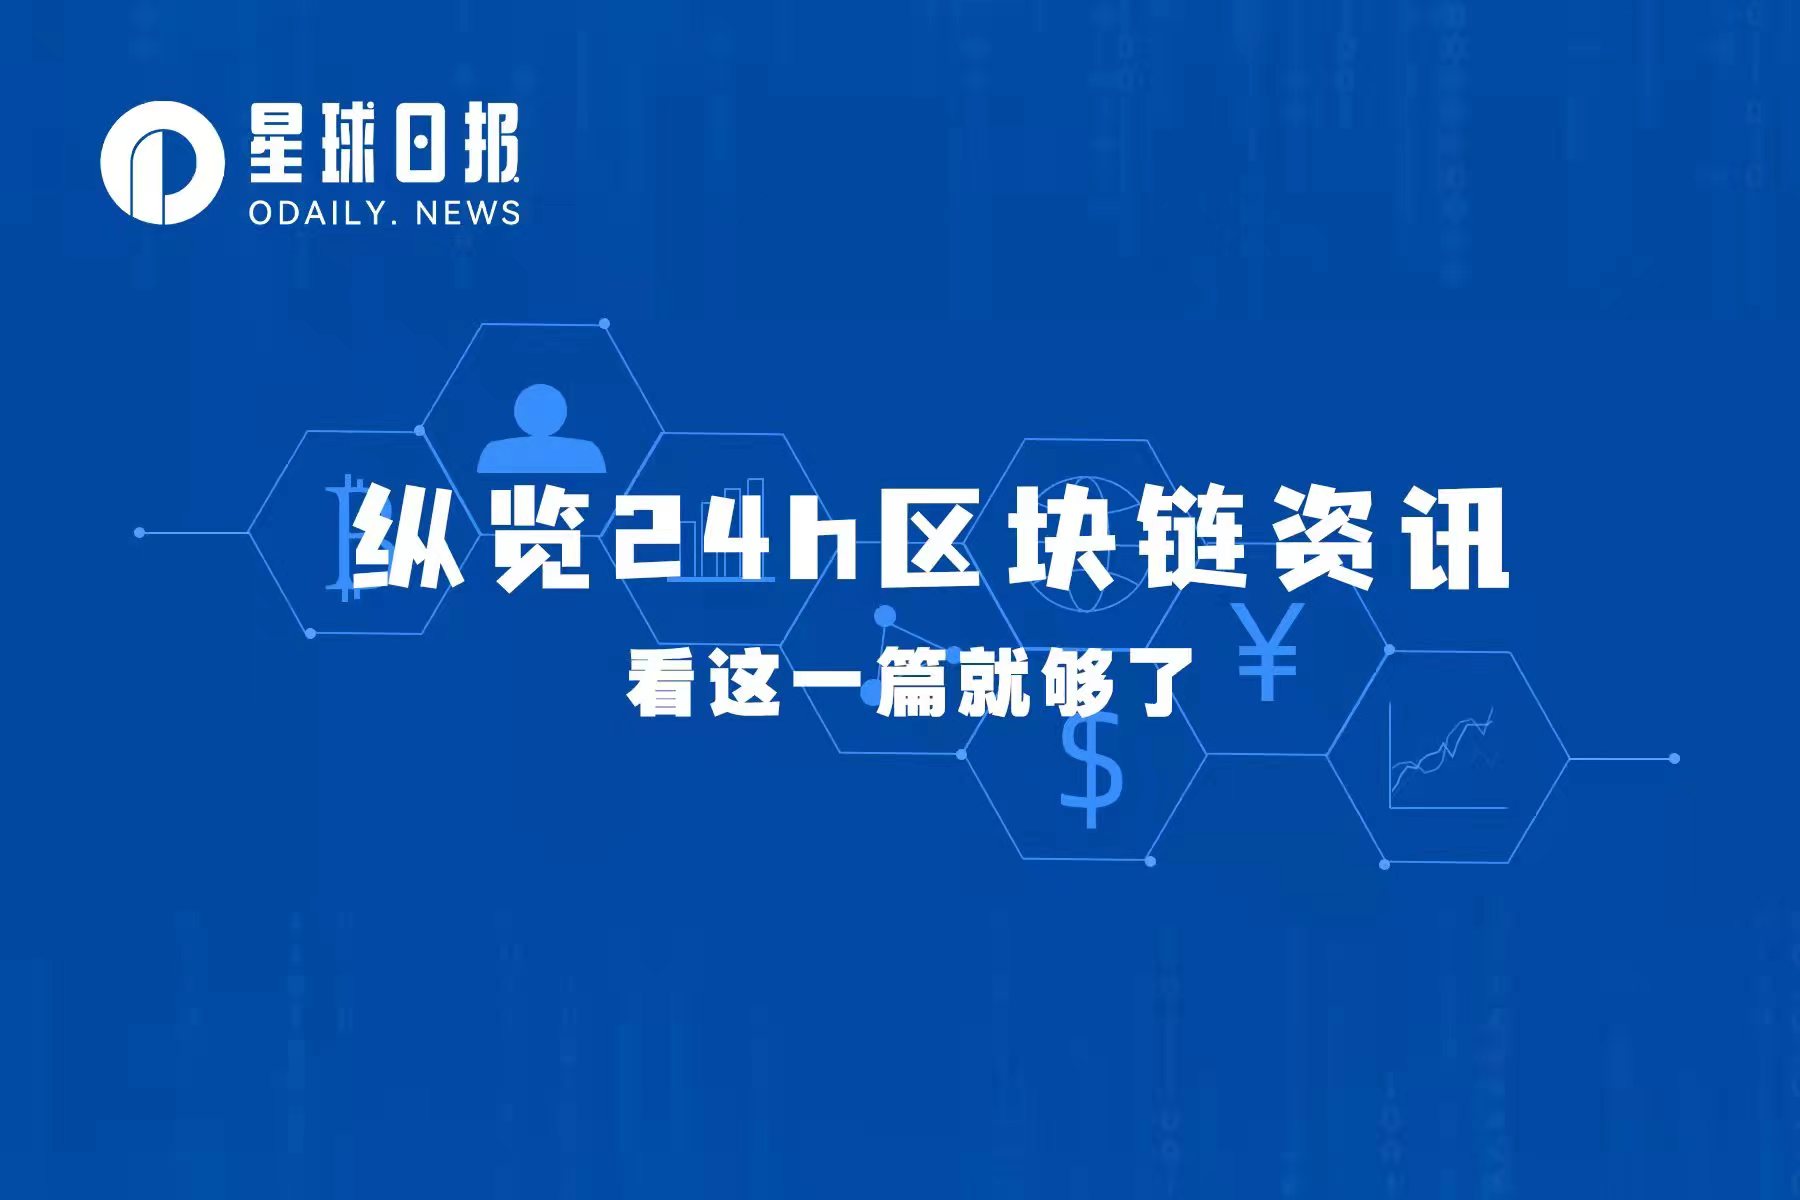 星球日报|BinanceUS将涉足美国政坛；ZhuSu将成立新投资公司（11月24日）